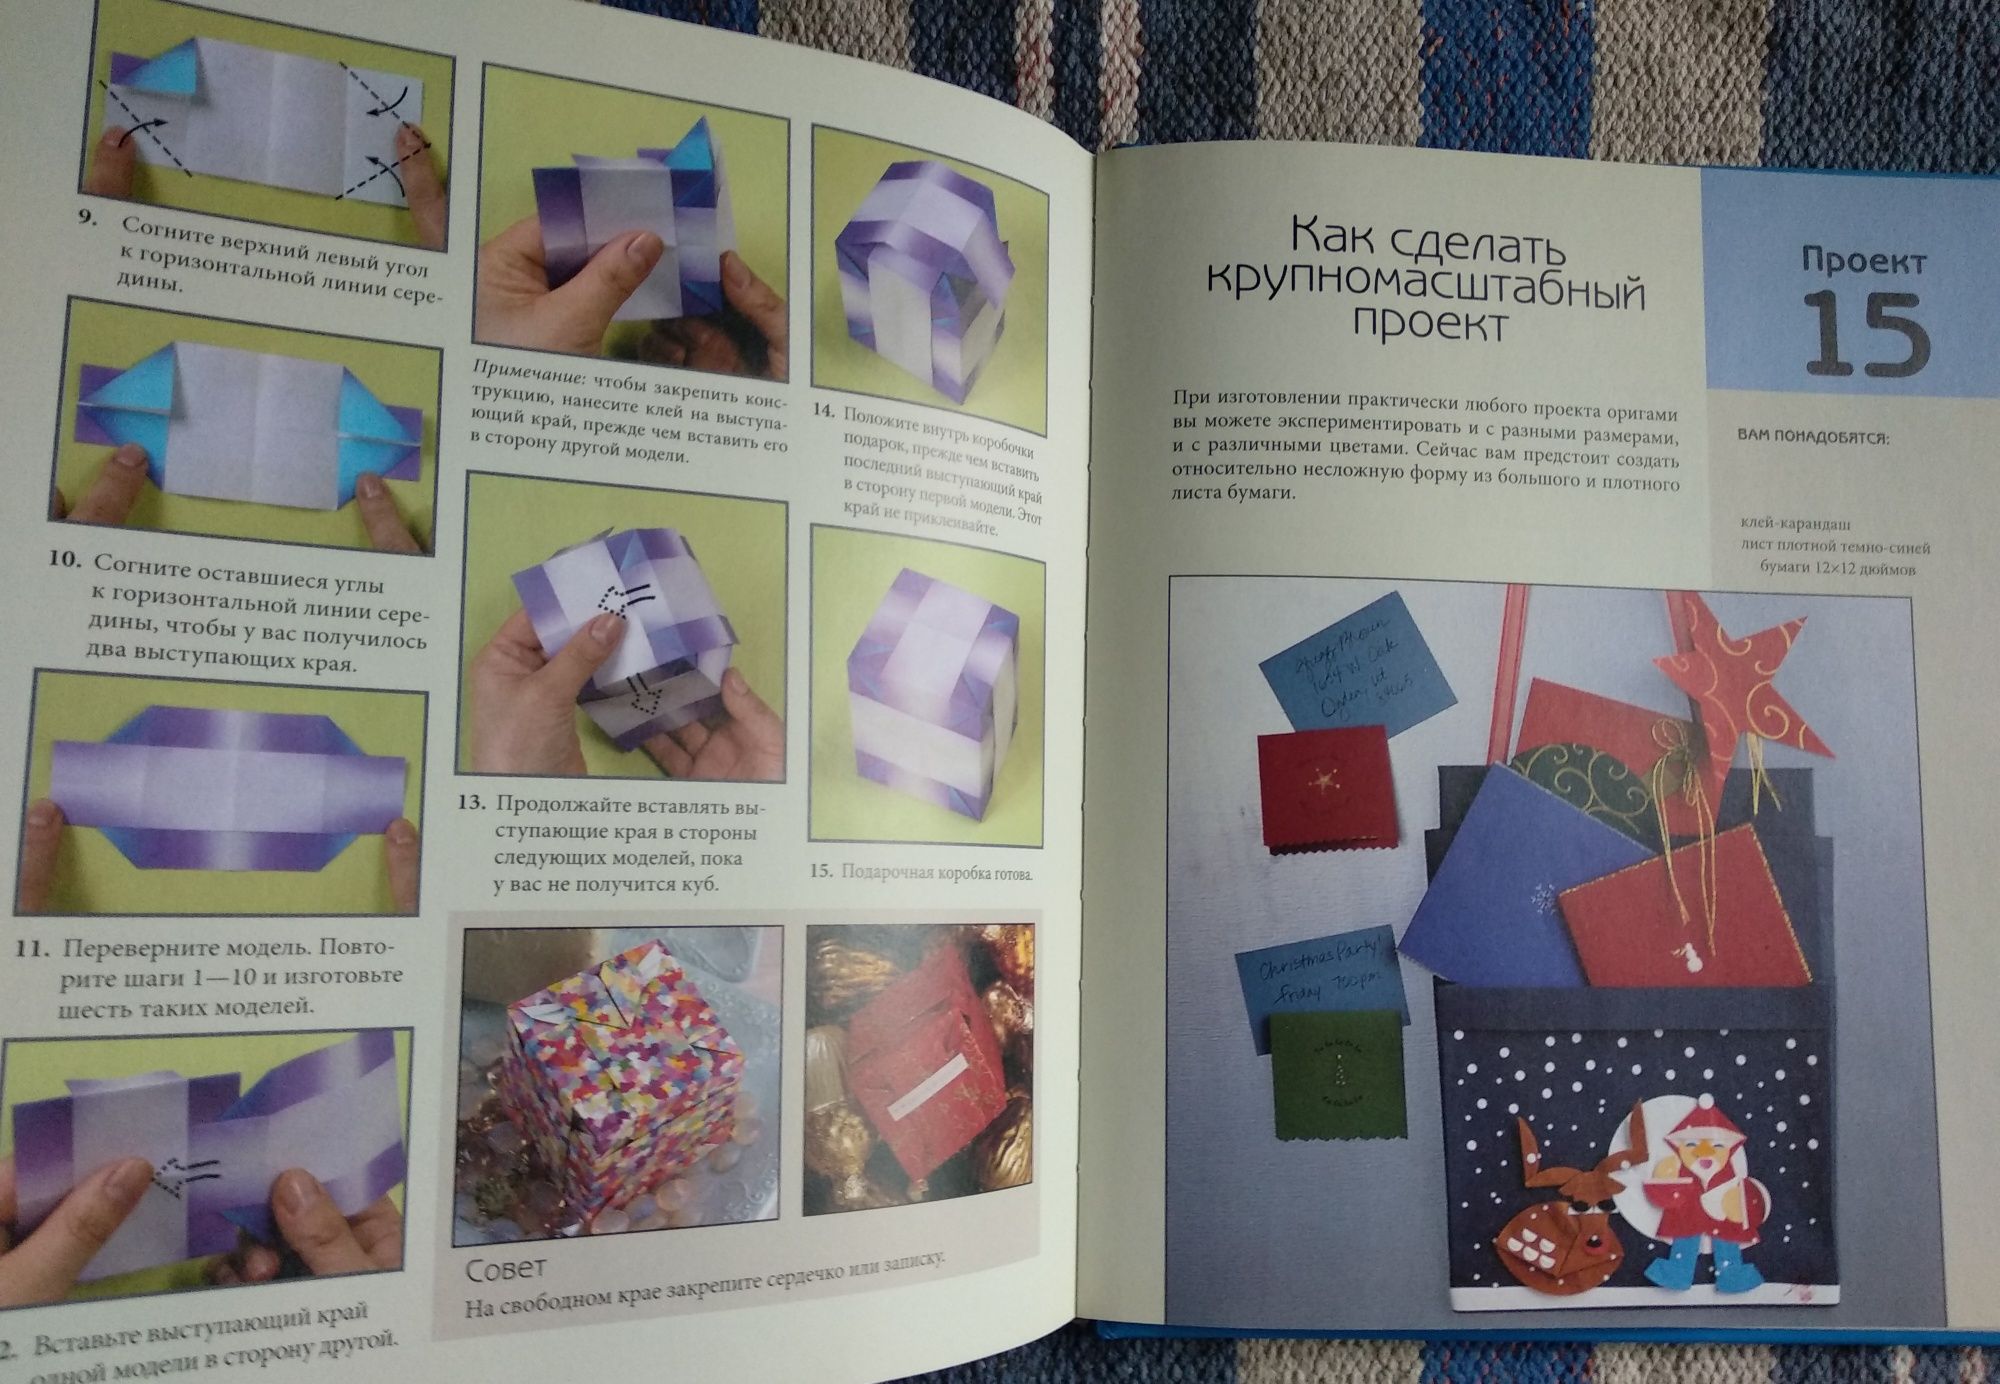 Книга Сунбоук Смит "Волшебный мир оригами"